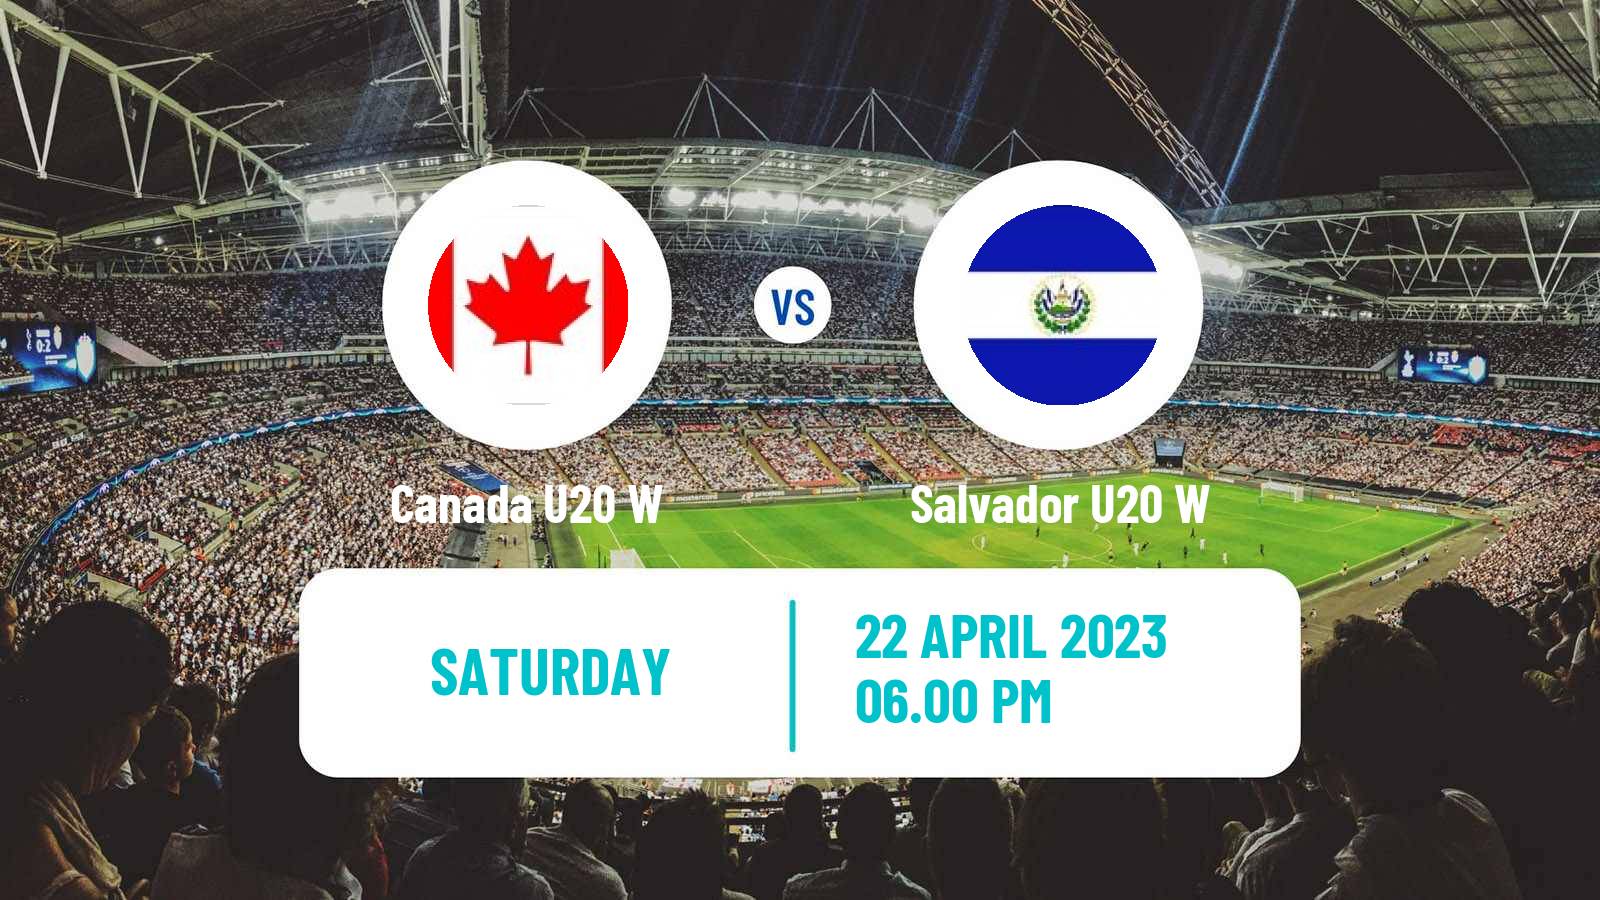 Soccer CONCACAF Championship U20 Women Canada U20 W - Salvador U20 W